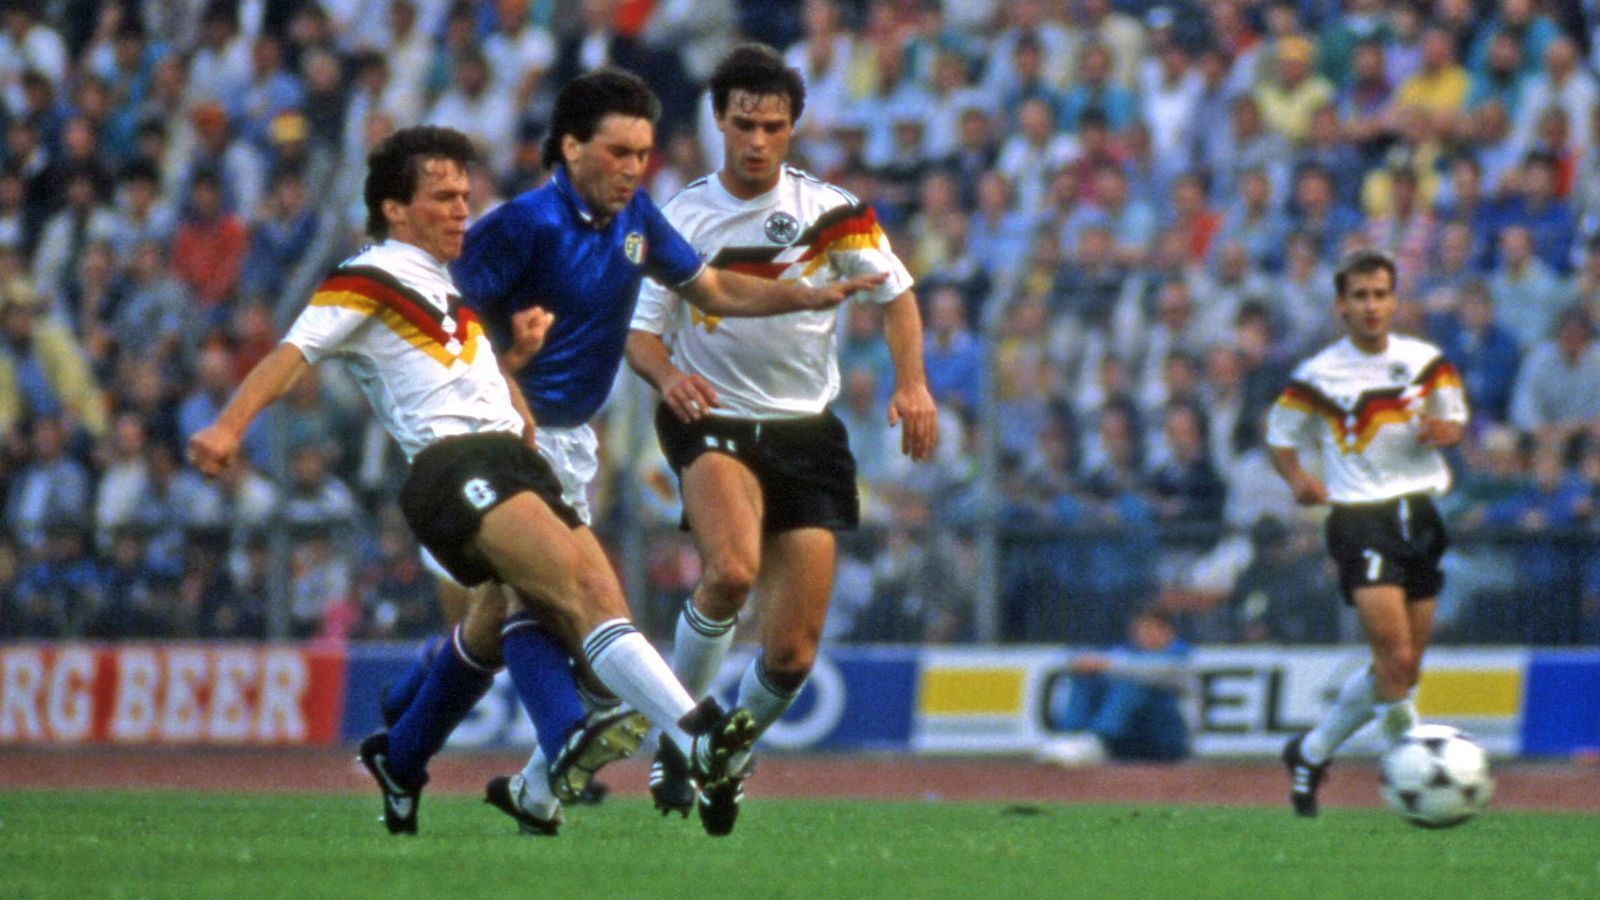 
                <strong>Unentschieden im Eröffnungsspiel</strong><br>
                Fußball gespielt wird auch. In einer ordentlichen Partie trennen sich Deutschland und Italien 1:1. Beide erreichen später das Halbfinale.
              